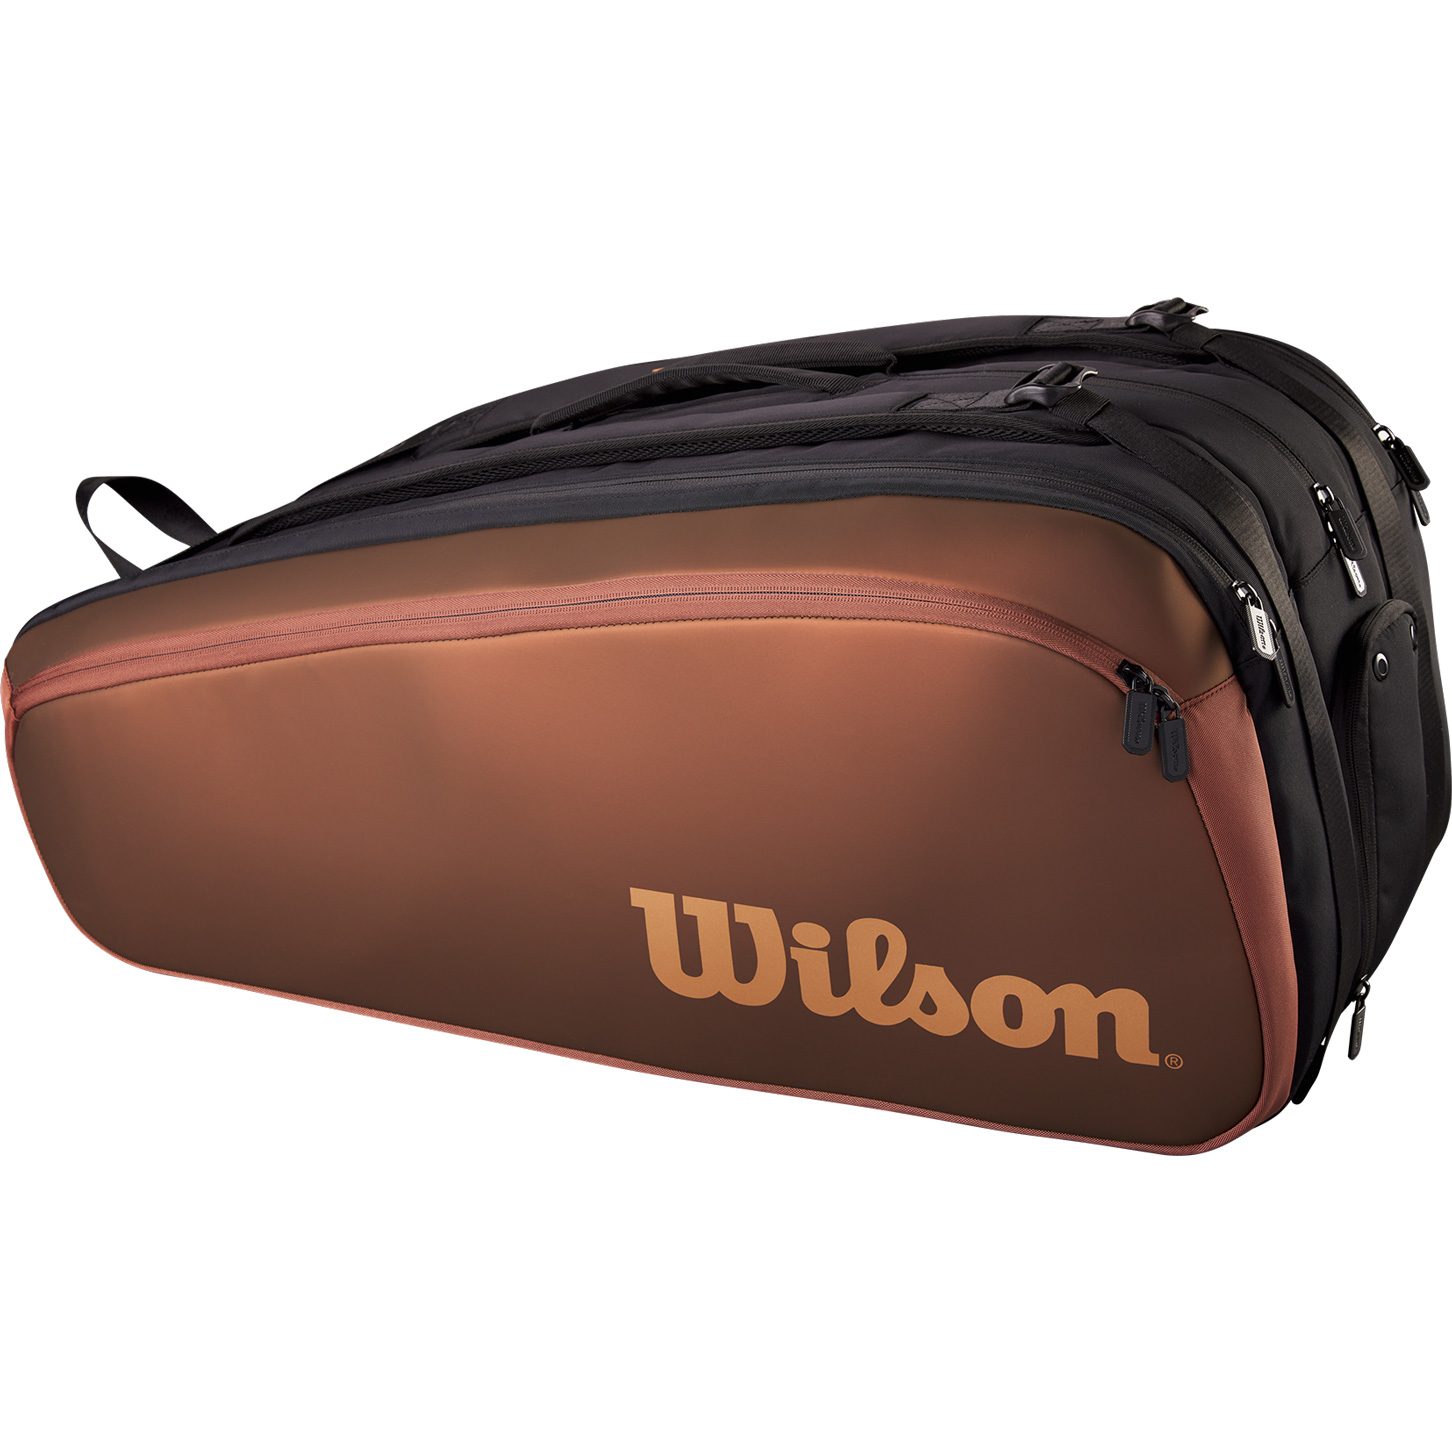 Wilson - Pro Staff V14 Super Tour 15 Pack Tennistasche bronze kaufen im  Sport Bittl Shop